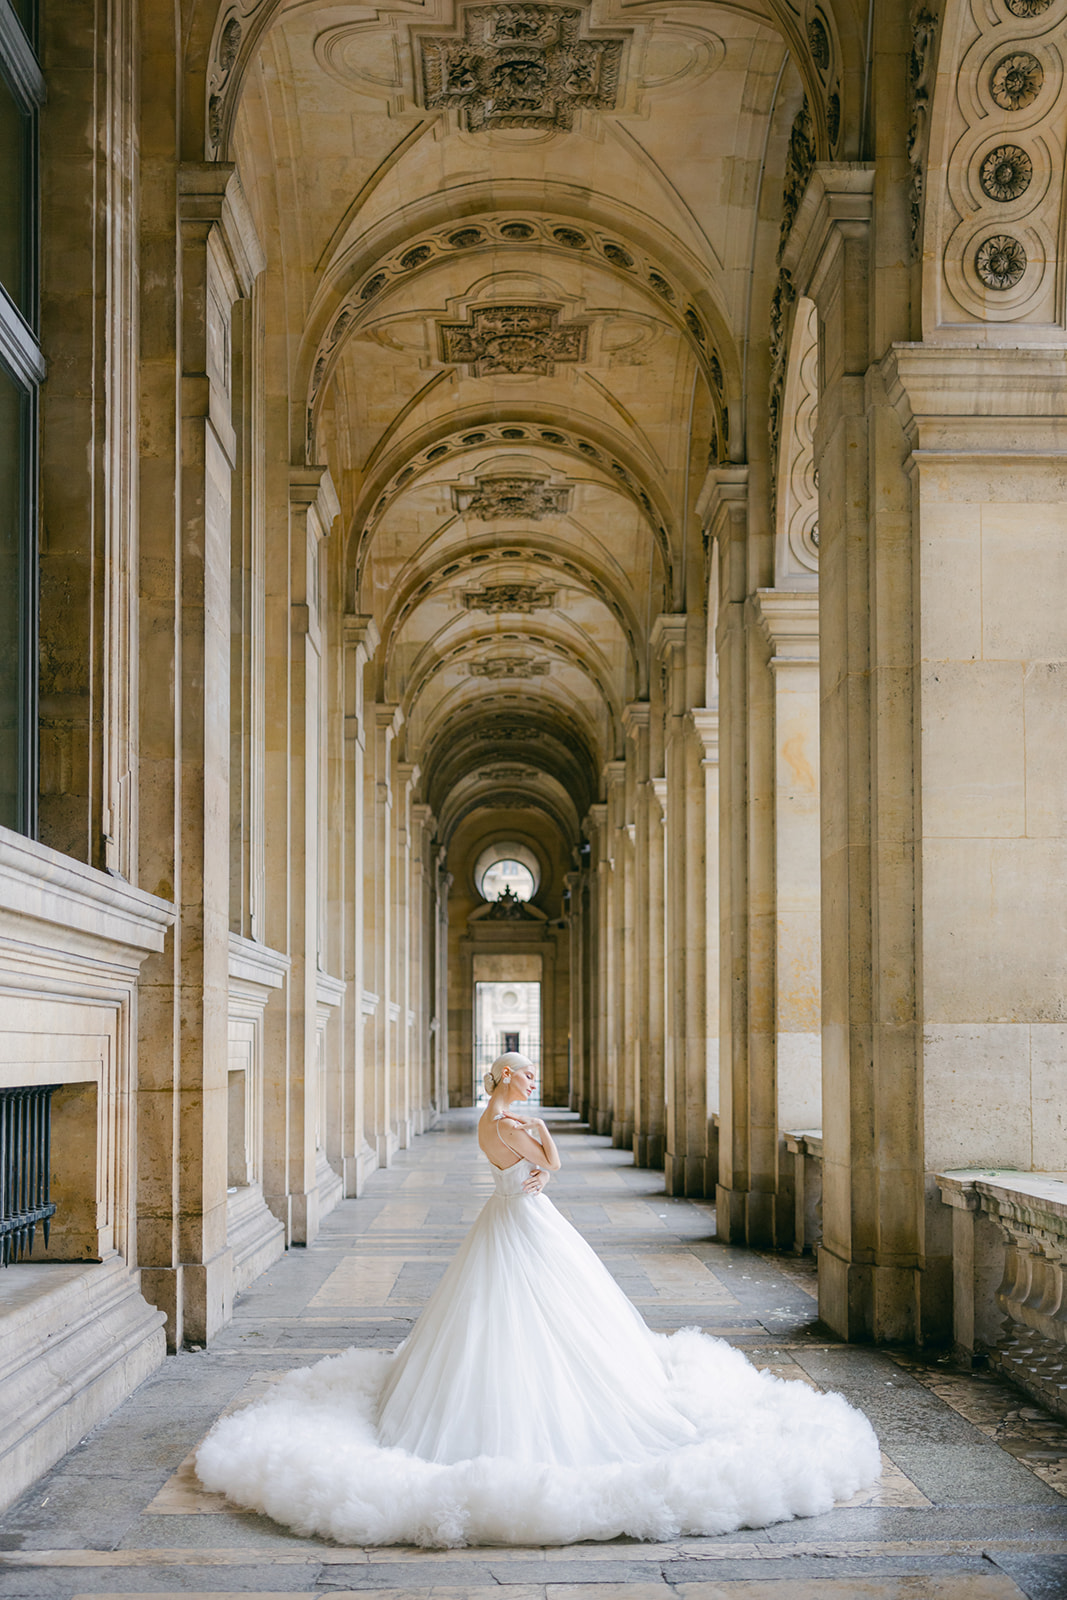 The Louvre Pre-Wedding Photos - Paris Engagement